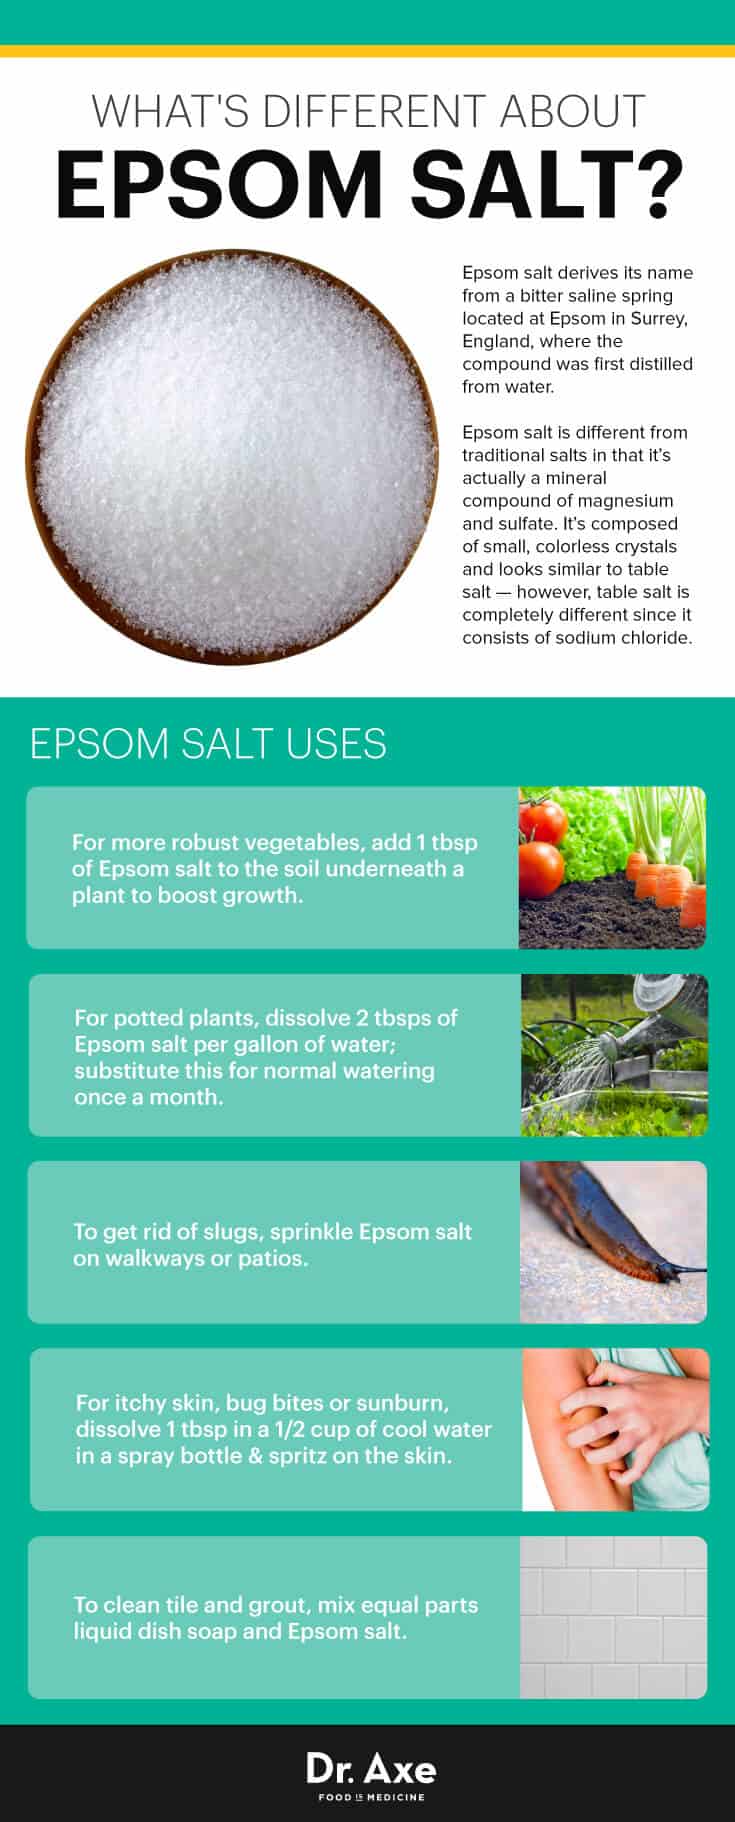 Epsom salt uses - Dr. Axe